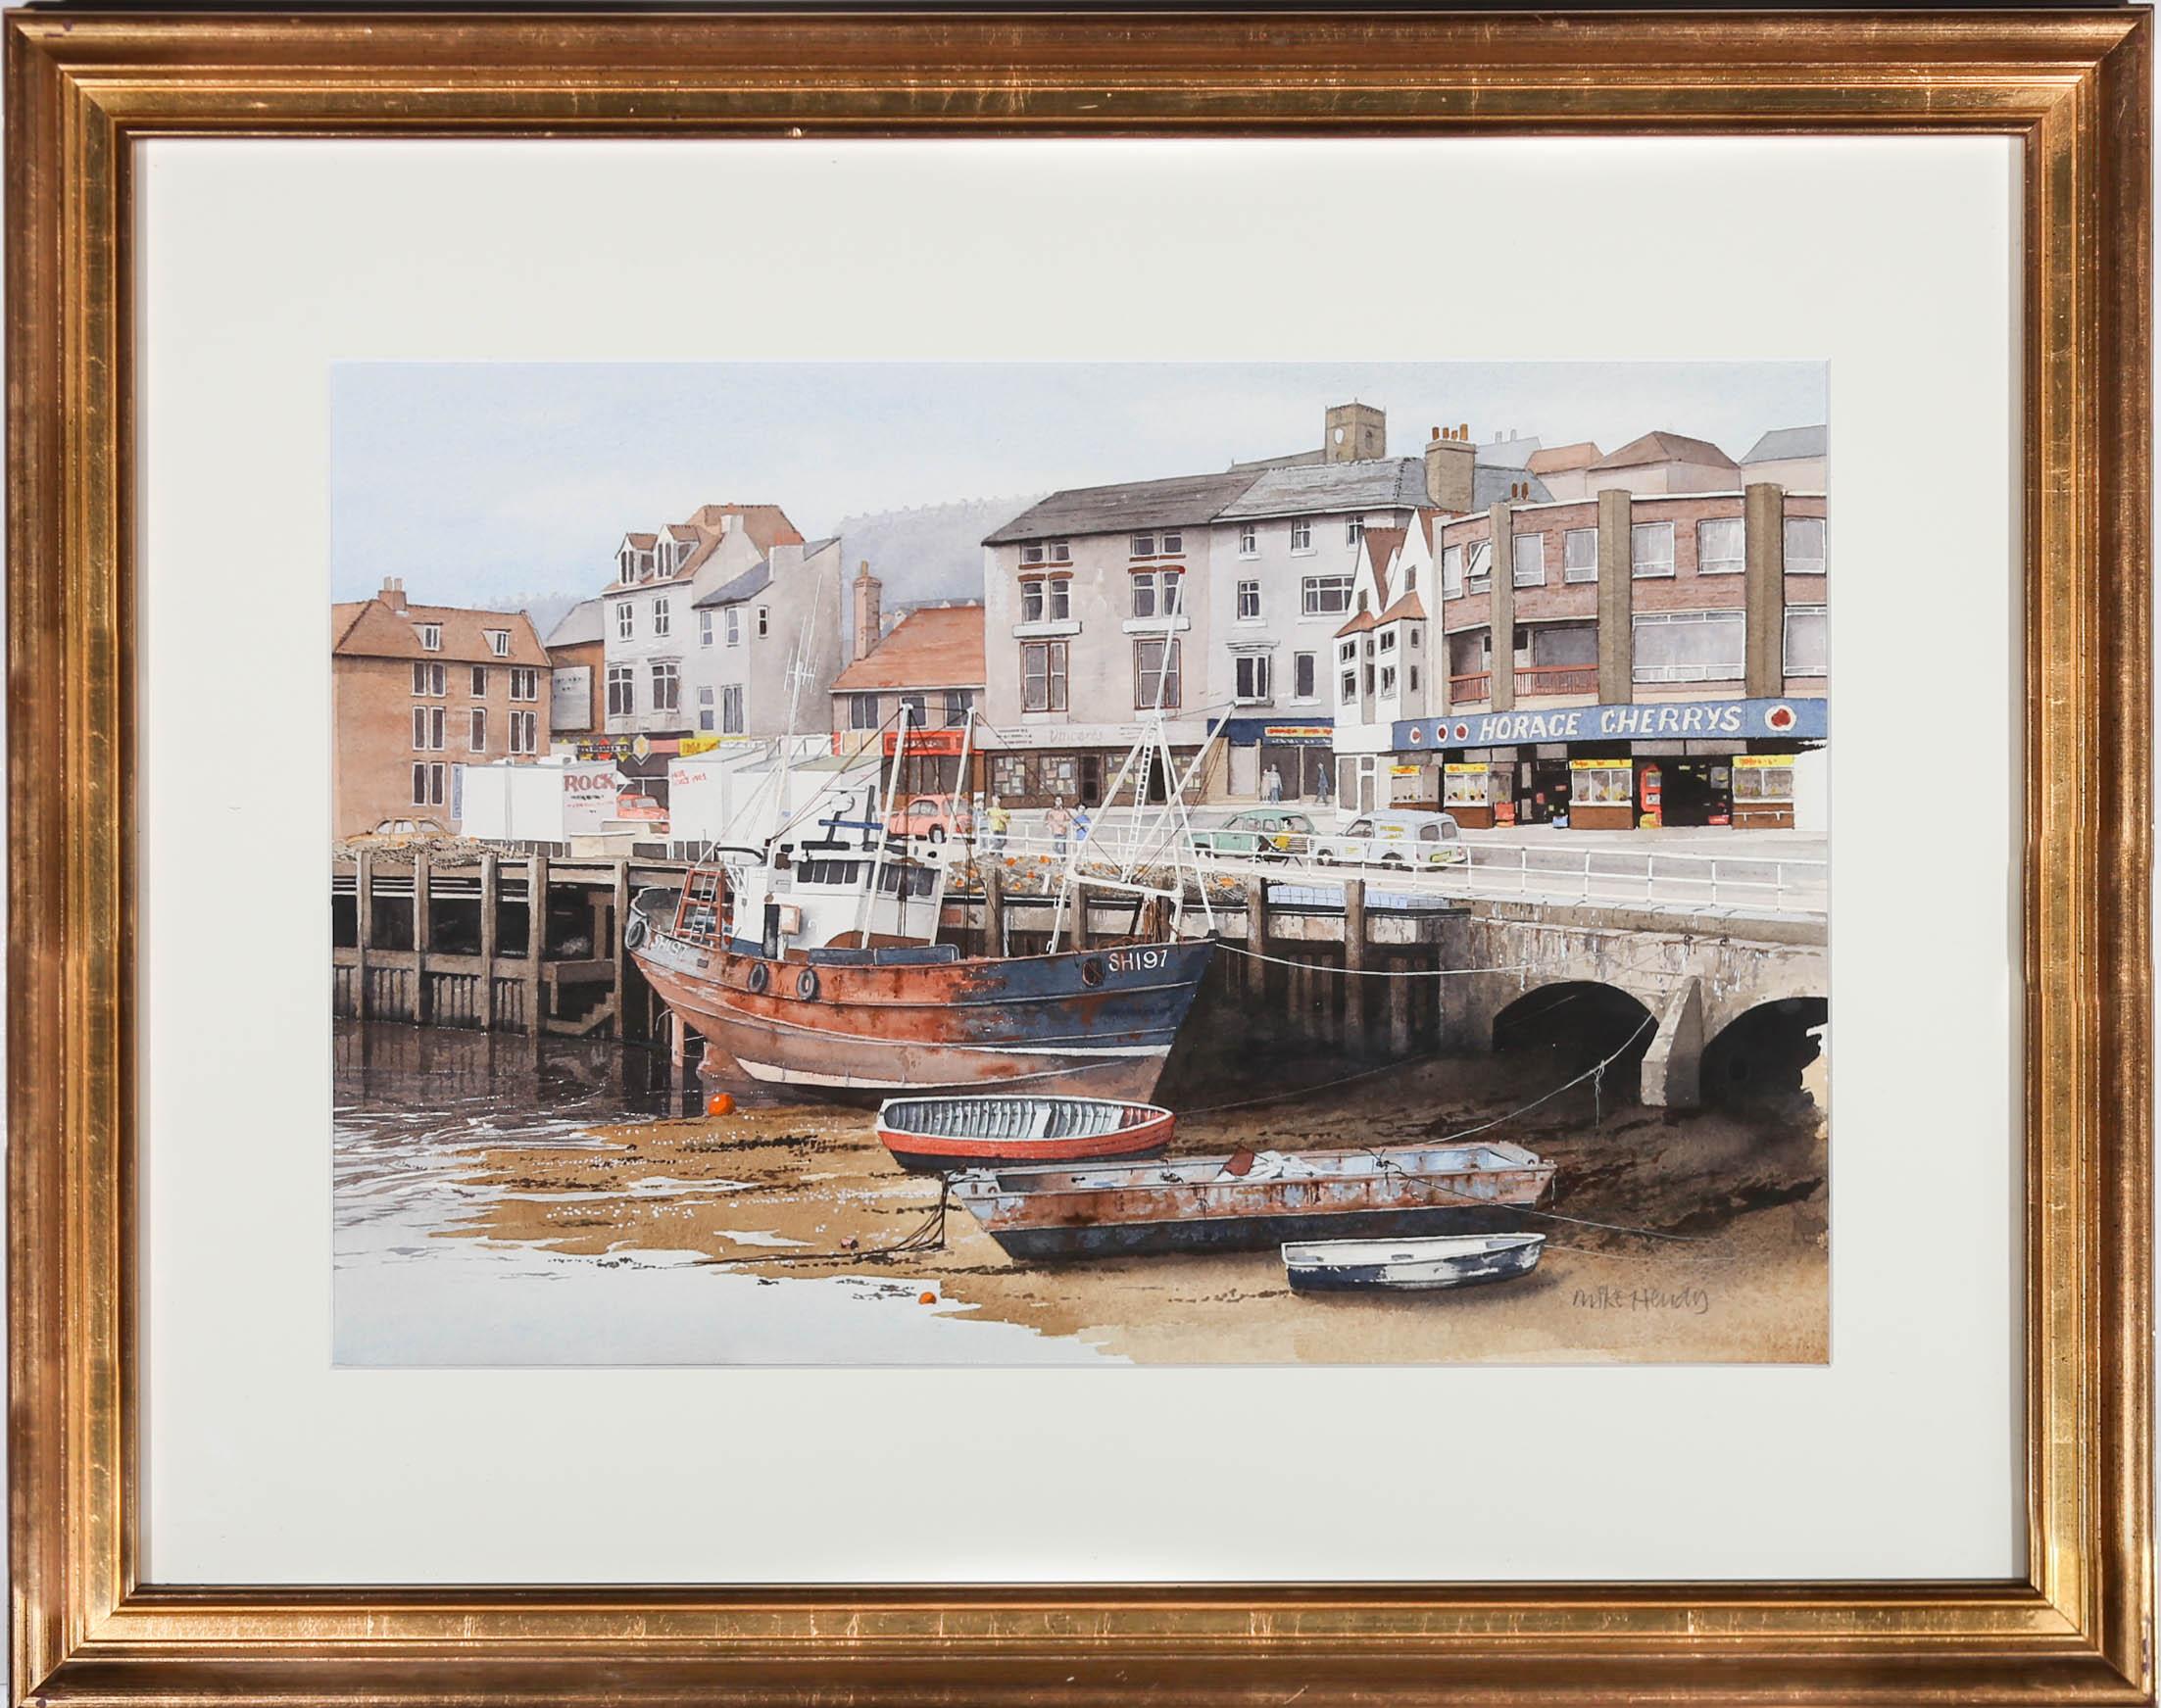 Une peinture à l'aquarelle nette et accomplie de Mike Hendy, représentant la destination de vacances britannique populaire de Scarborough. Un grand bateau de pêche attire l'attention au centre de la composition, tandis que l'arcade de bord de mer